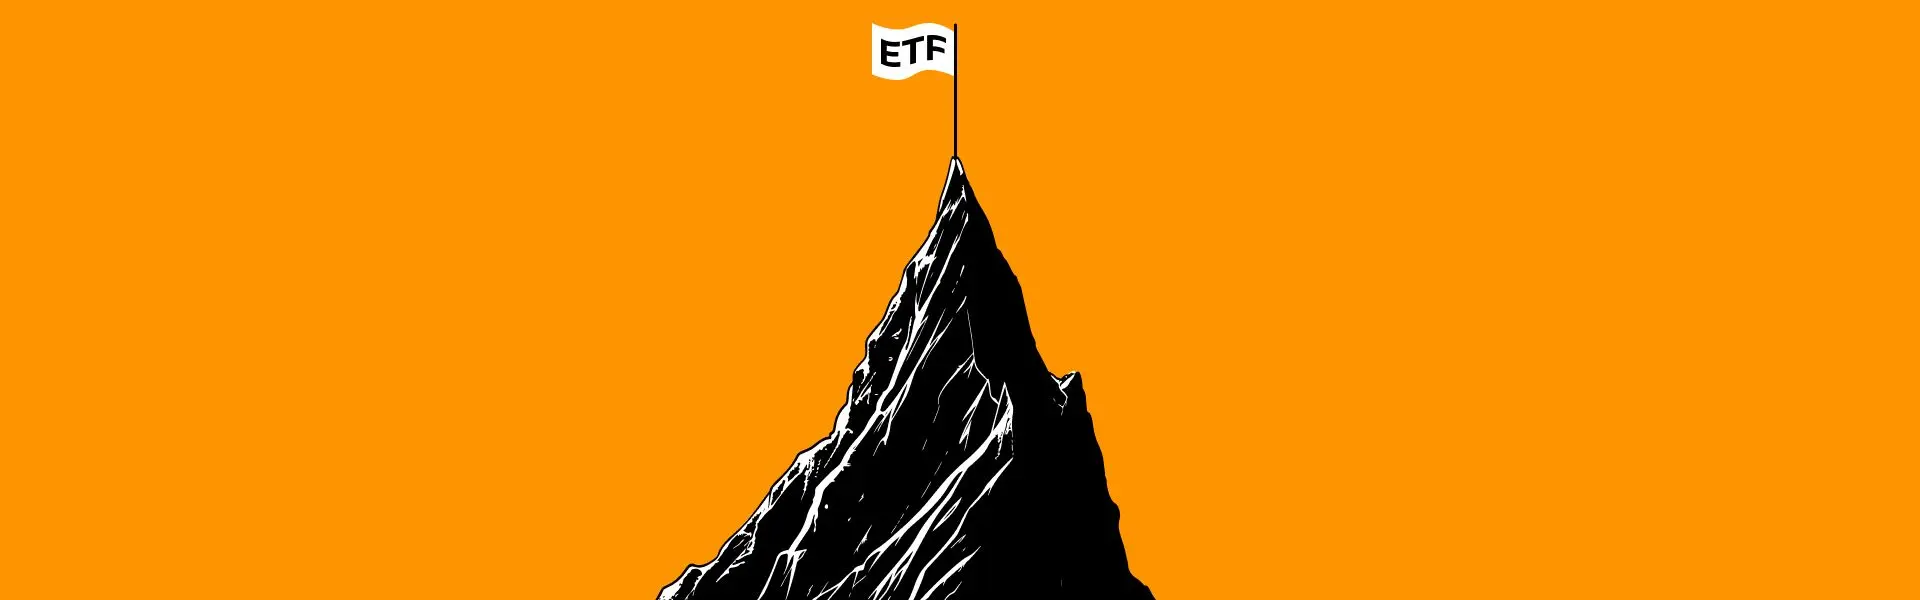 BlackRock випередив GBTC за обсягами торгів ETF.